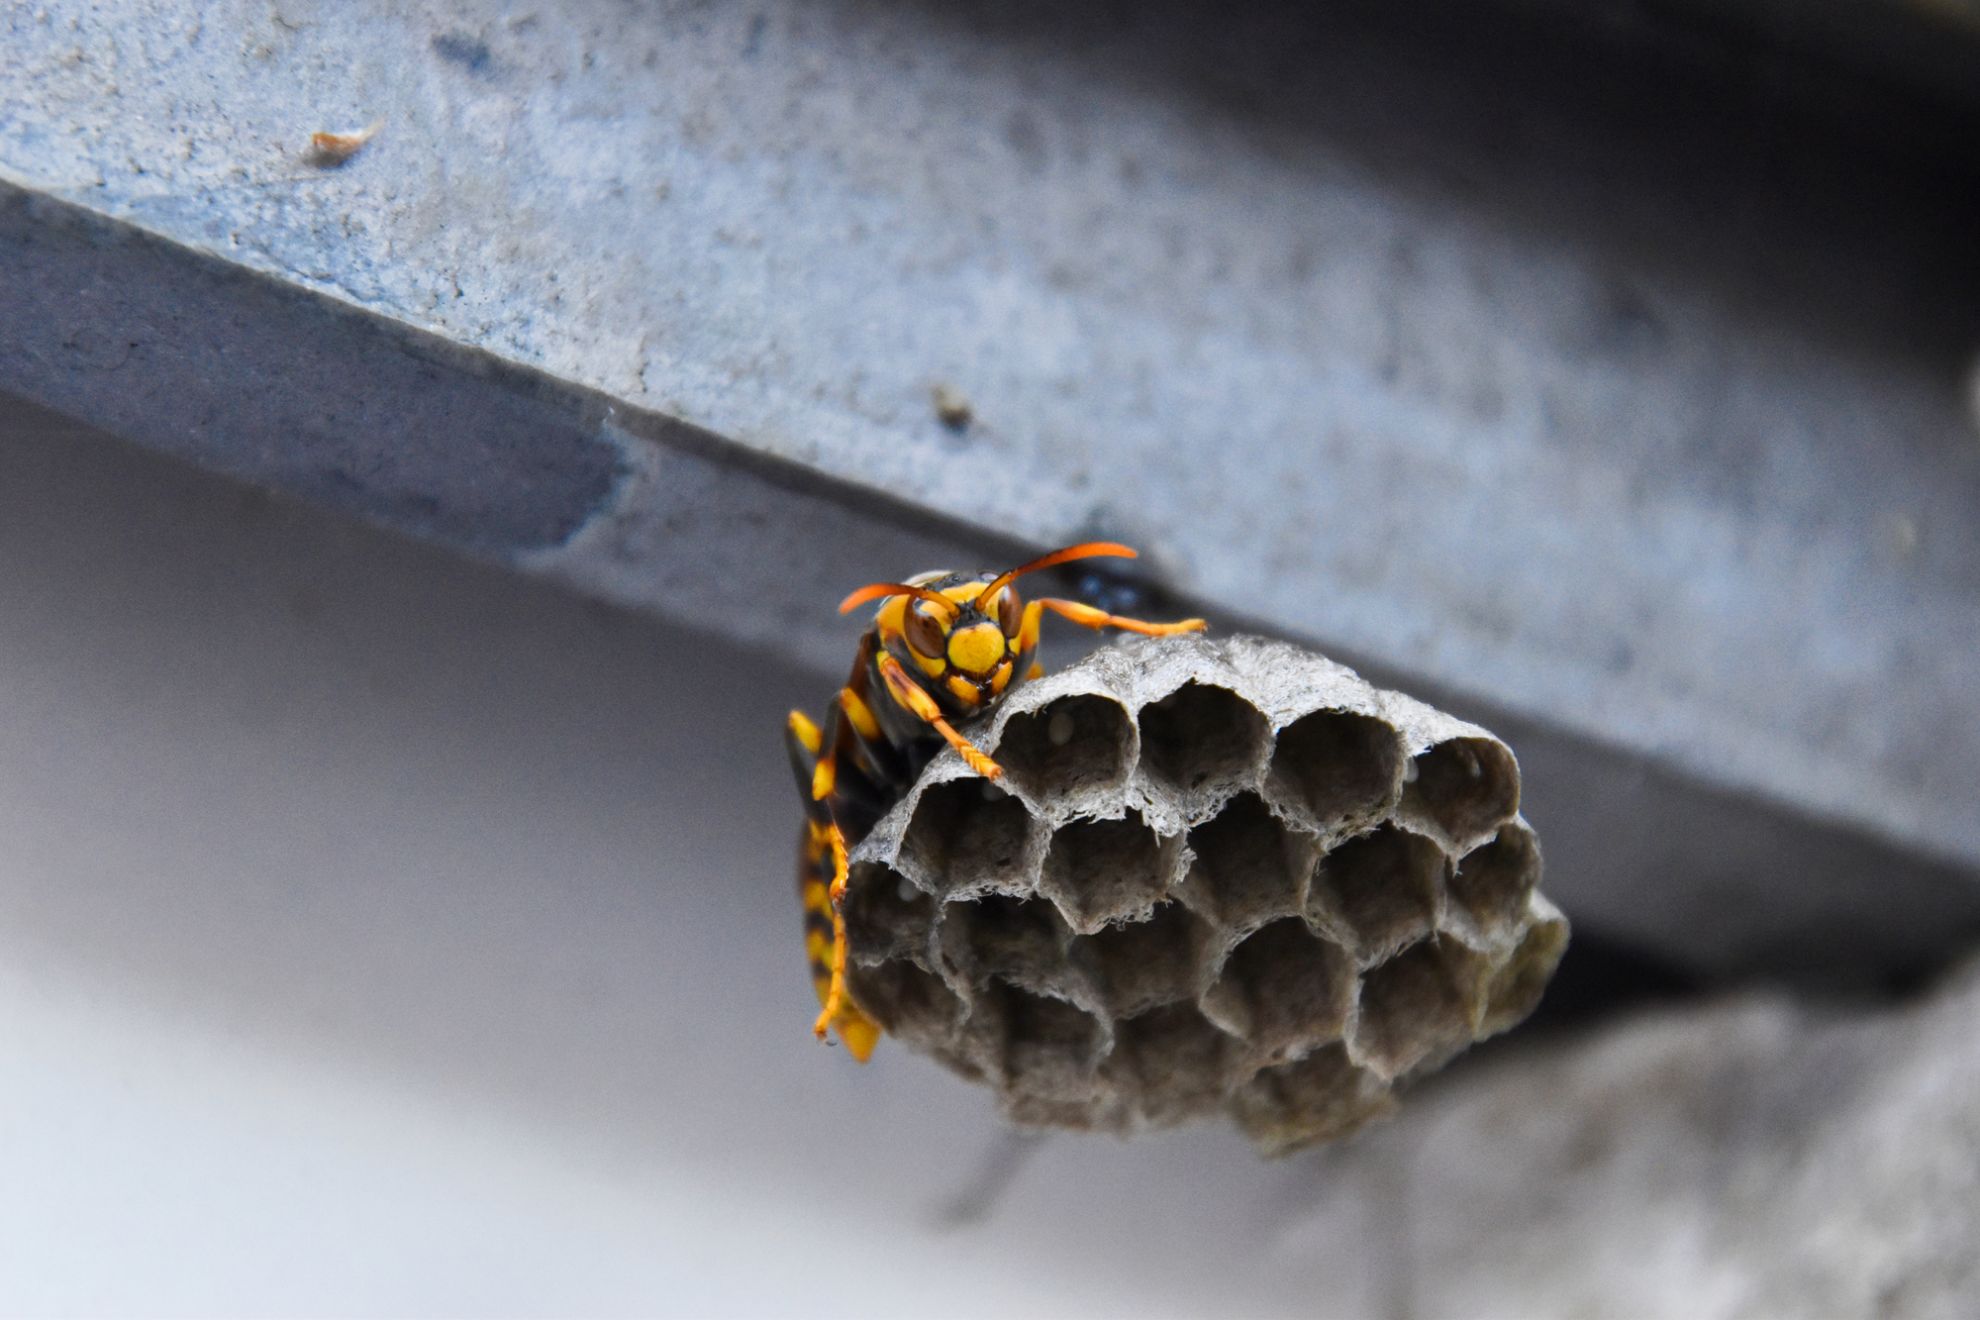 冬に蜂の巣を駆除する方法とは 蜂の活動時期や駆除する際の注意点などについて紹介 ハチお助け本舗 ハチの巣駆除